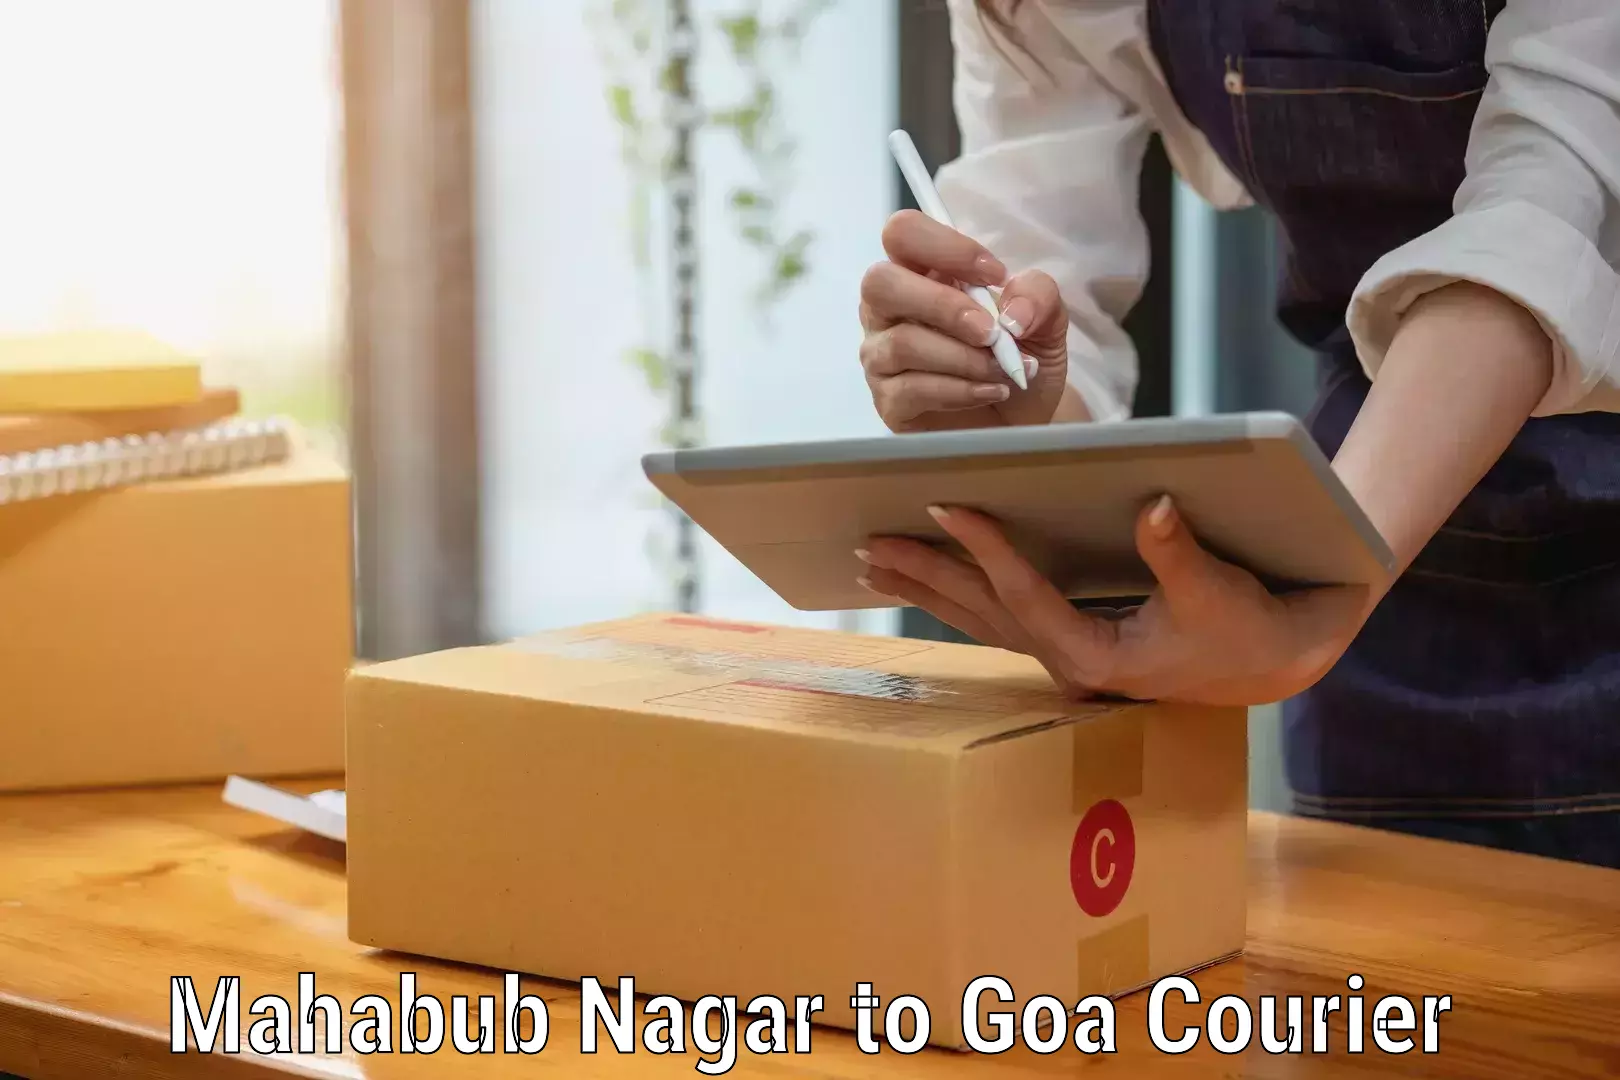 Trusted moving company Mahabub Nagar to South Goa